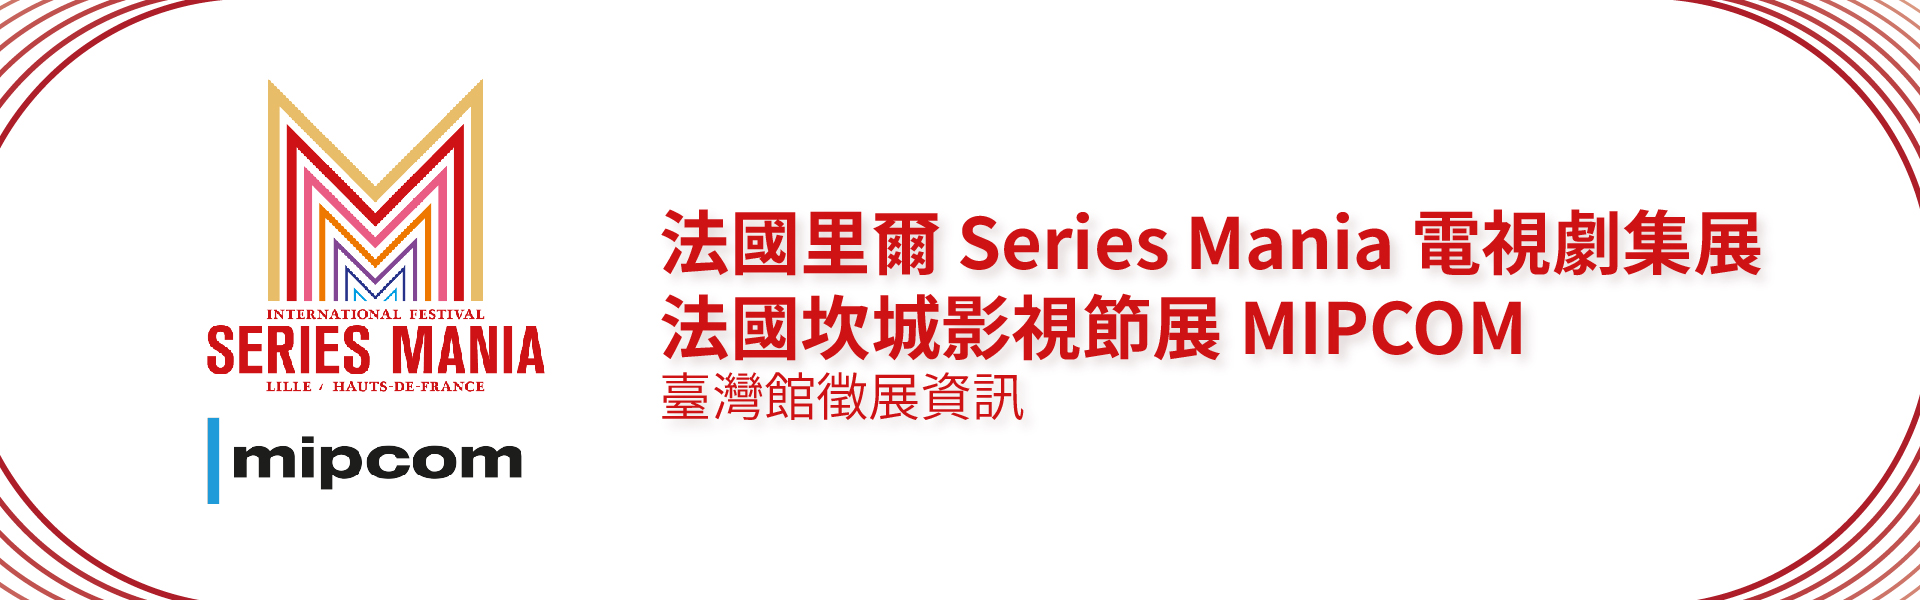 2021 法國里爾 Series Mania 電視劇集展 & 法國坎城影視節展 MIPCOM 臺灣館徵展資訊（已截止）